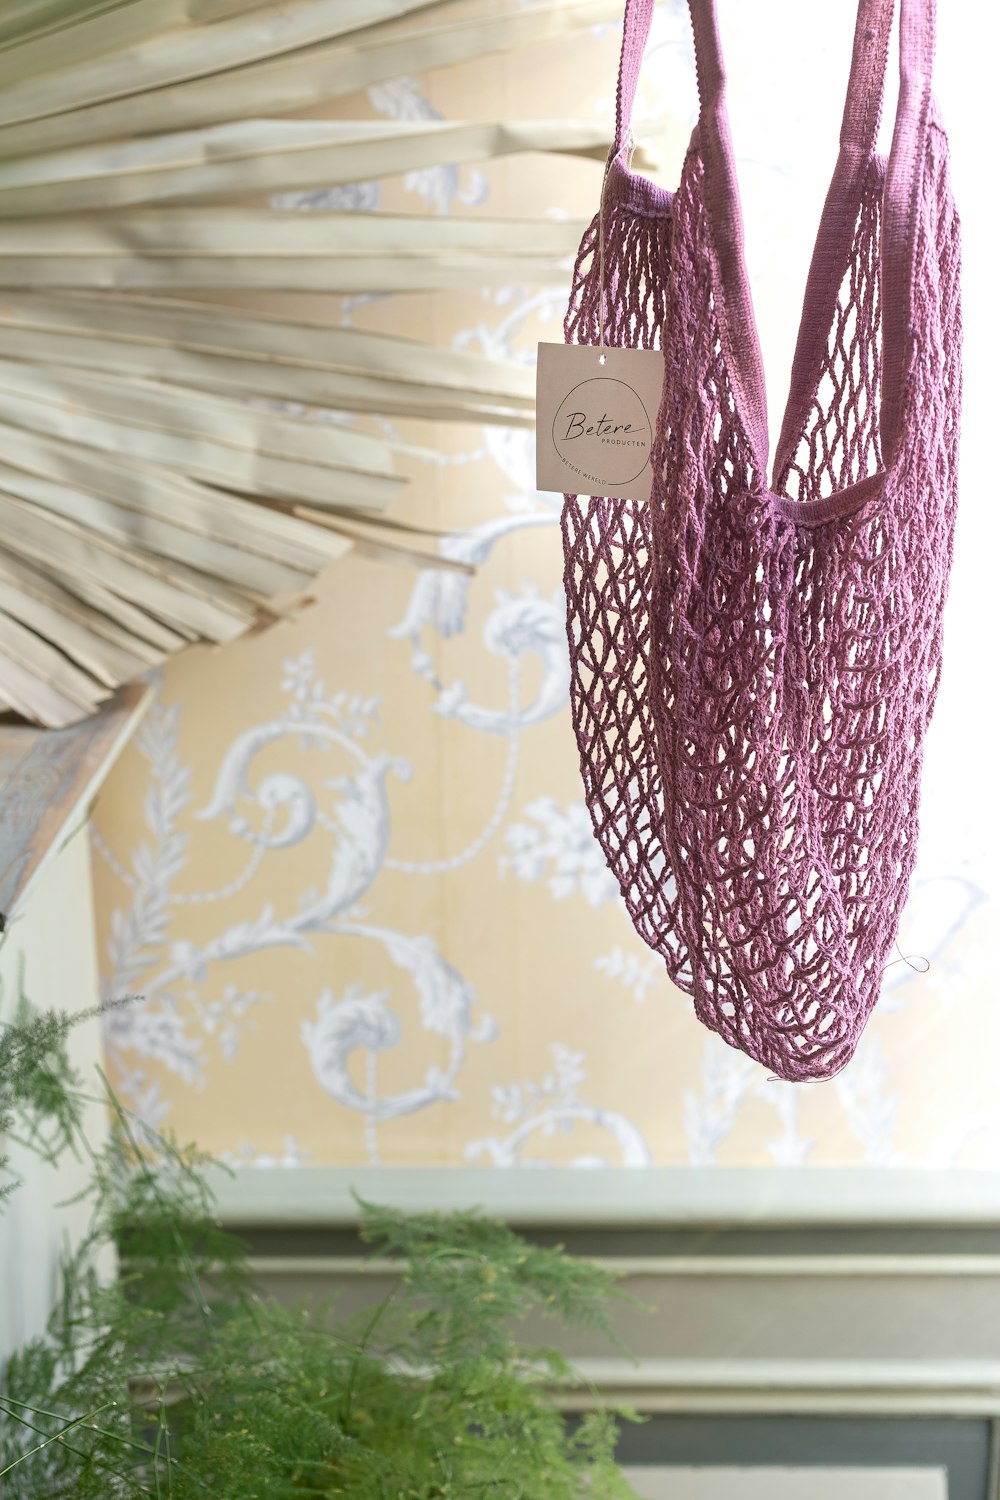 Eine lila Tasche, die neben einer Topfpflanze von der Decke hängt